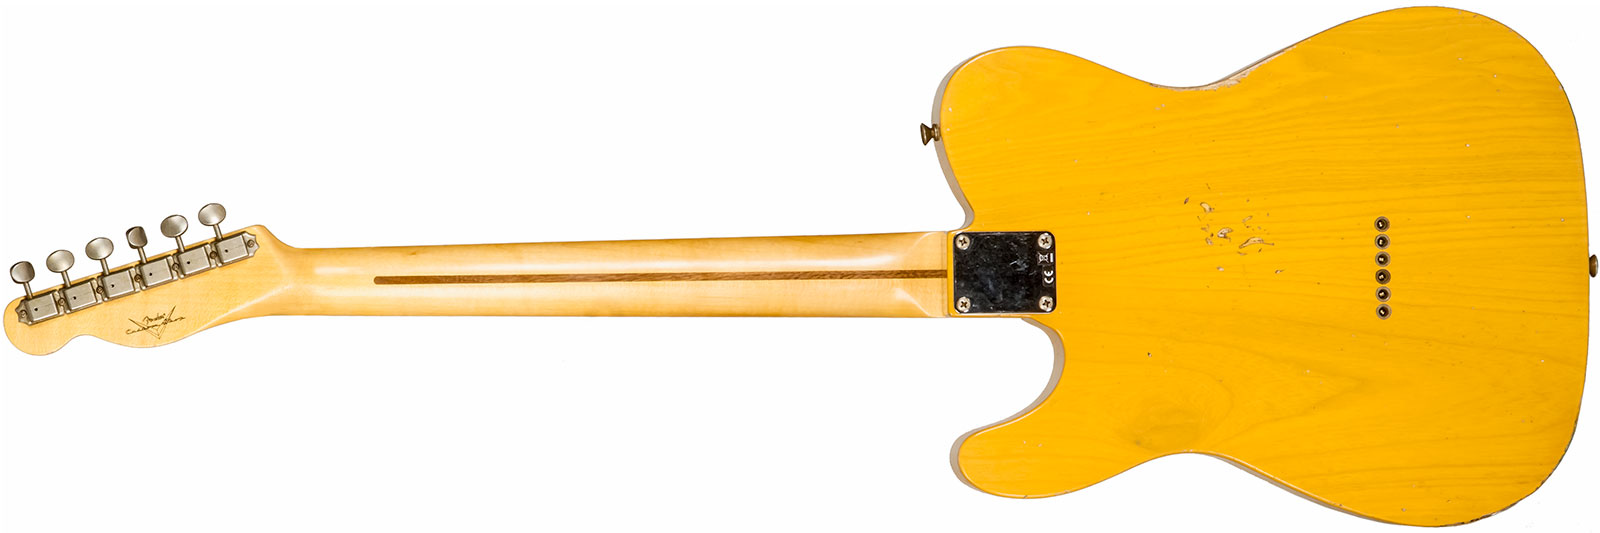 Fender Custom Shop Tele 1952 2s Ht Mn #r135225 - Relic Aged Buttercotch Blonde - Guitare Électrique Forme Tel - Variation 1